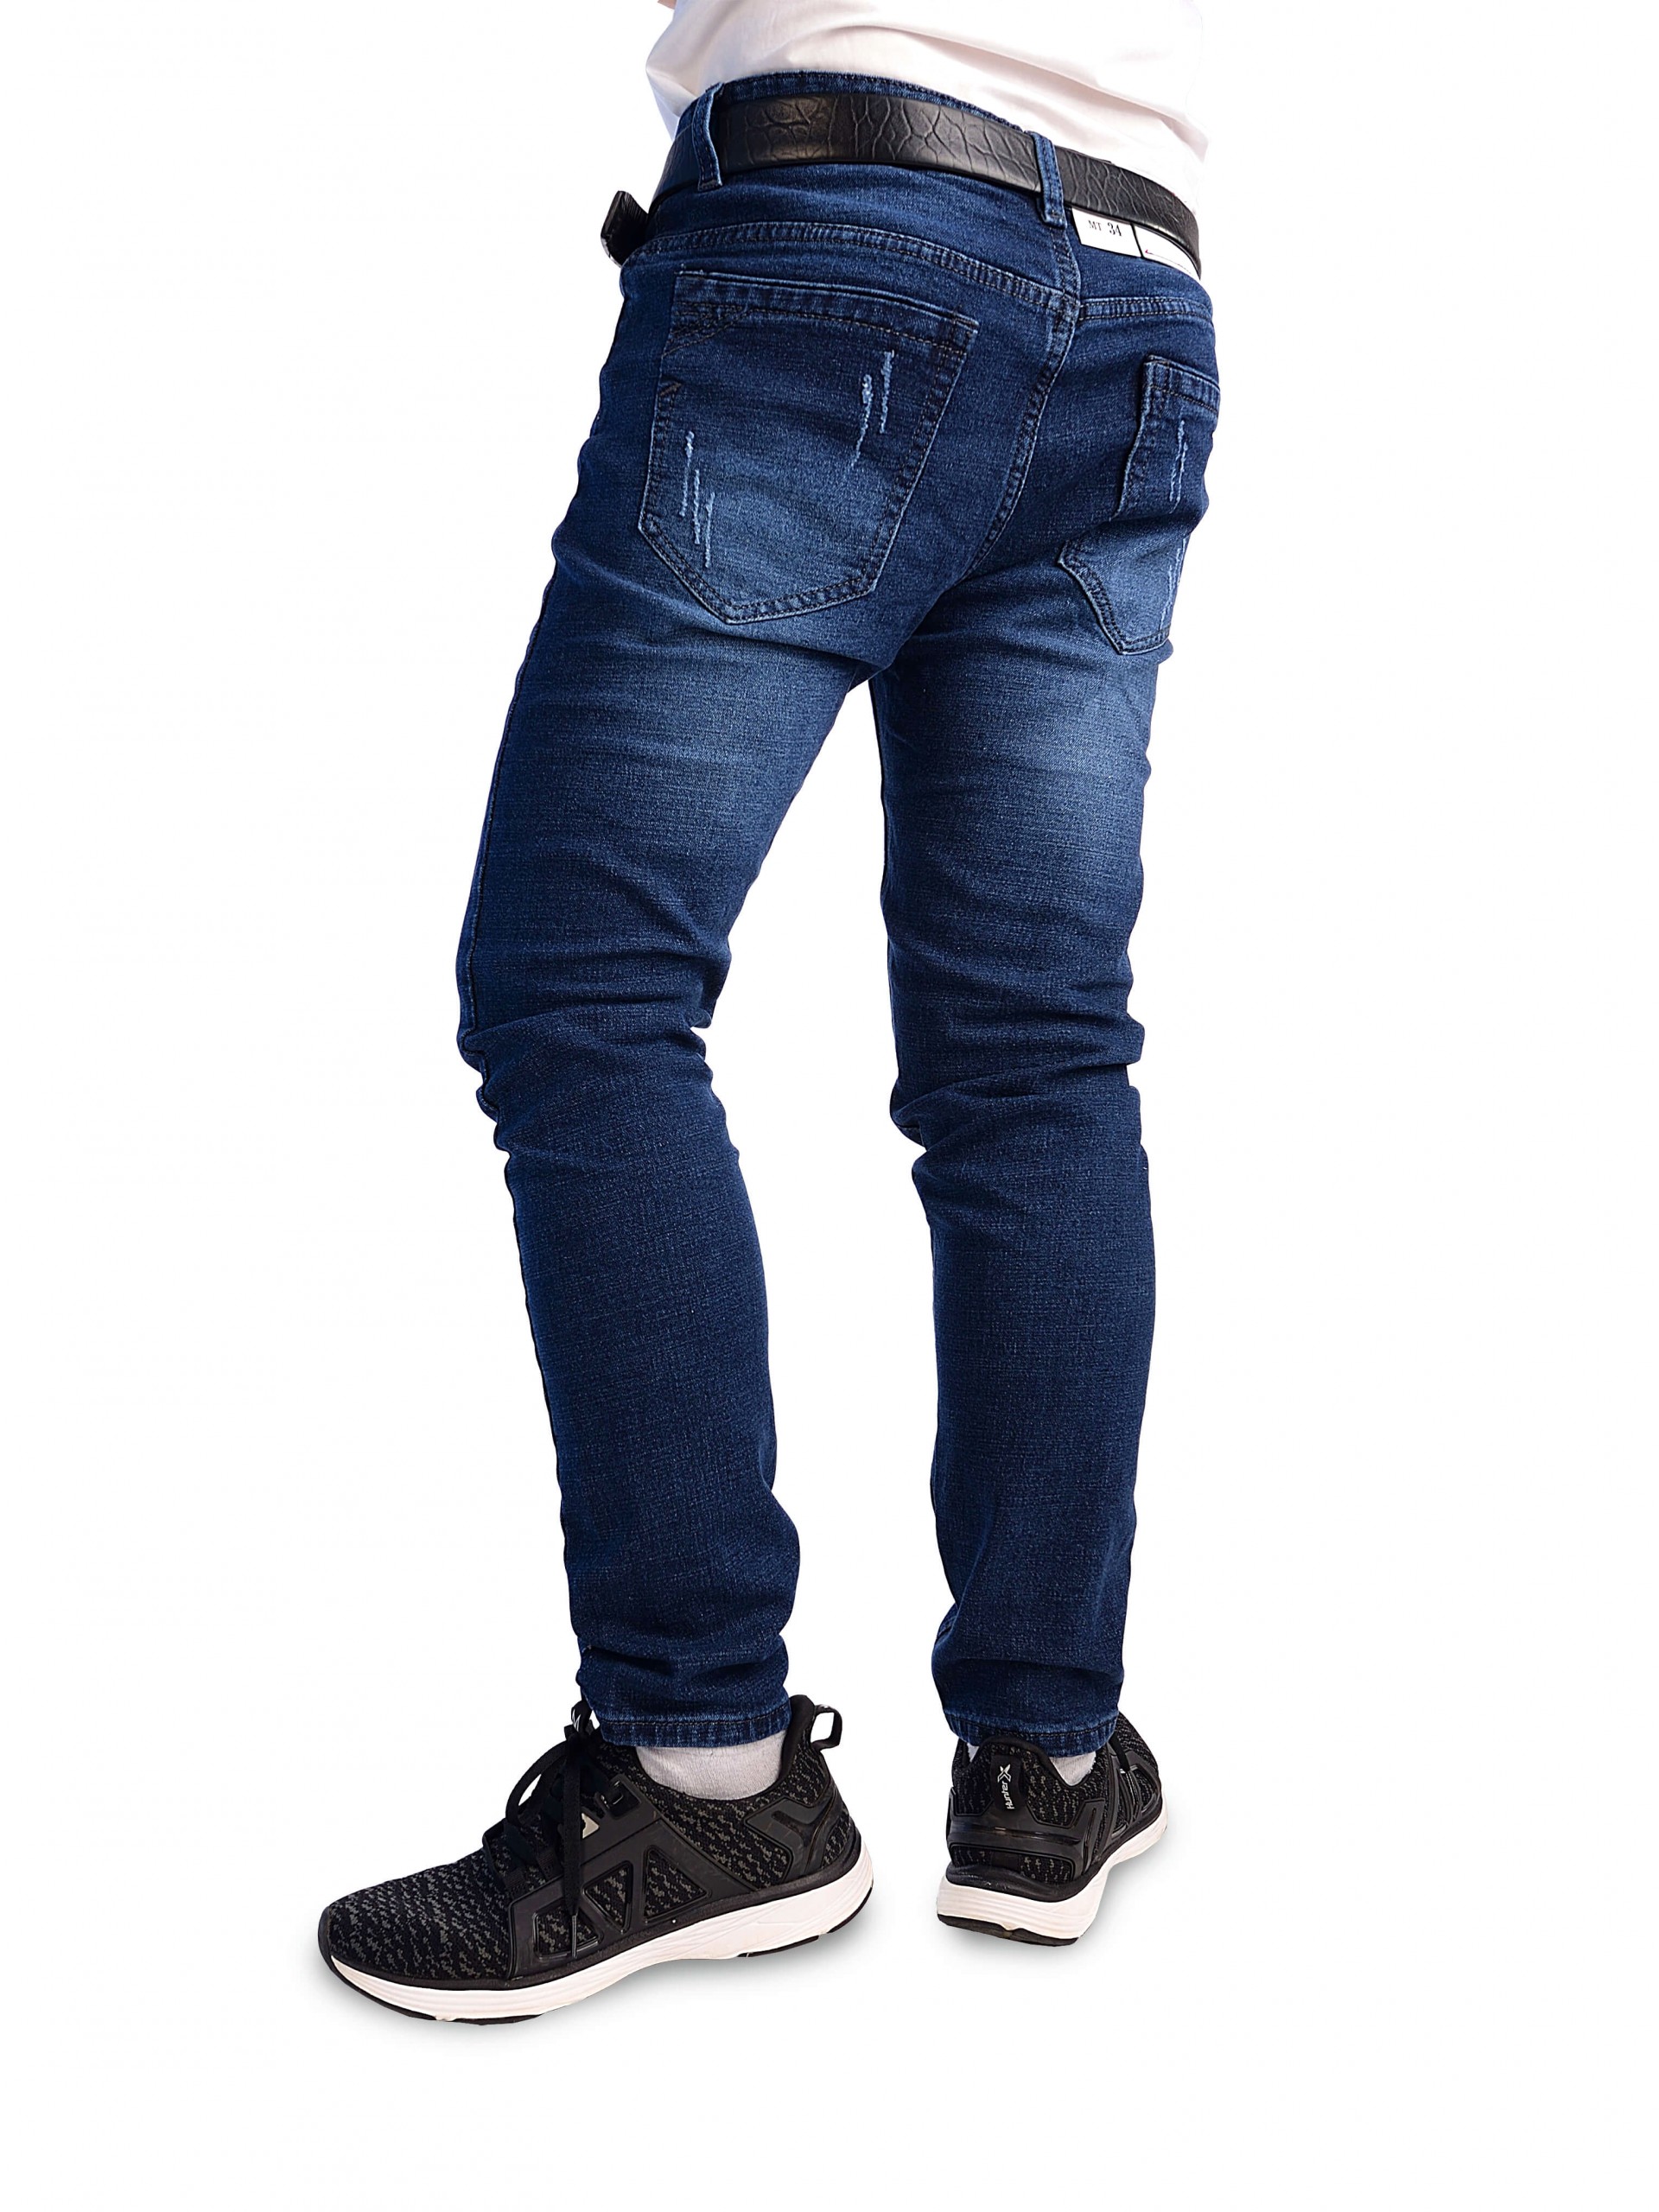 7 shop bán quần jean nam TP. HCM chất lượng, giá tốt nhất